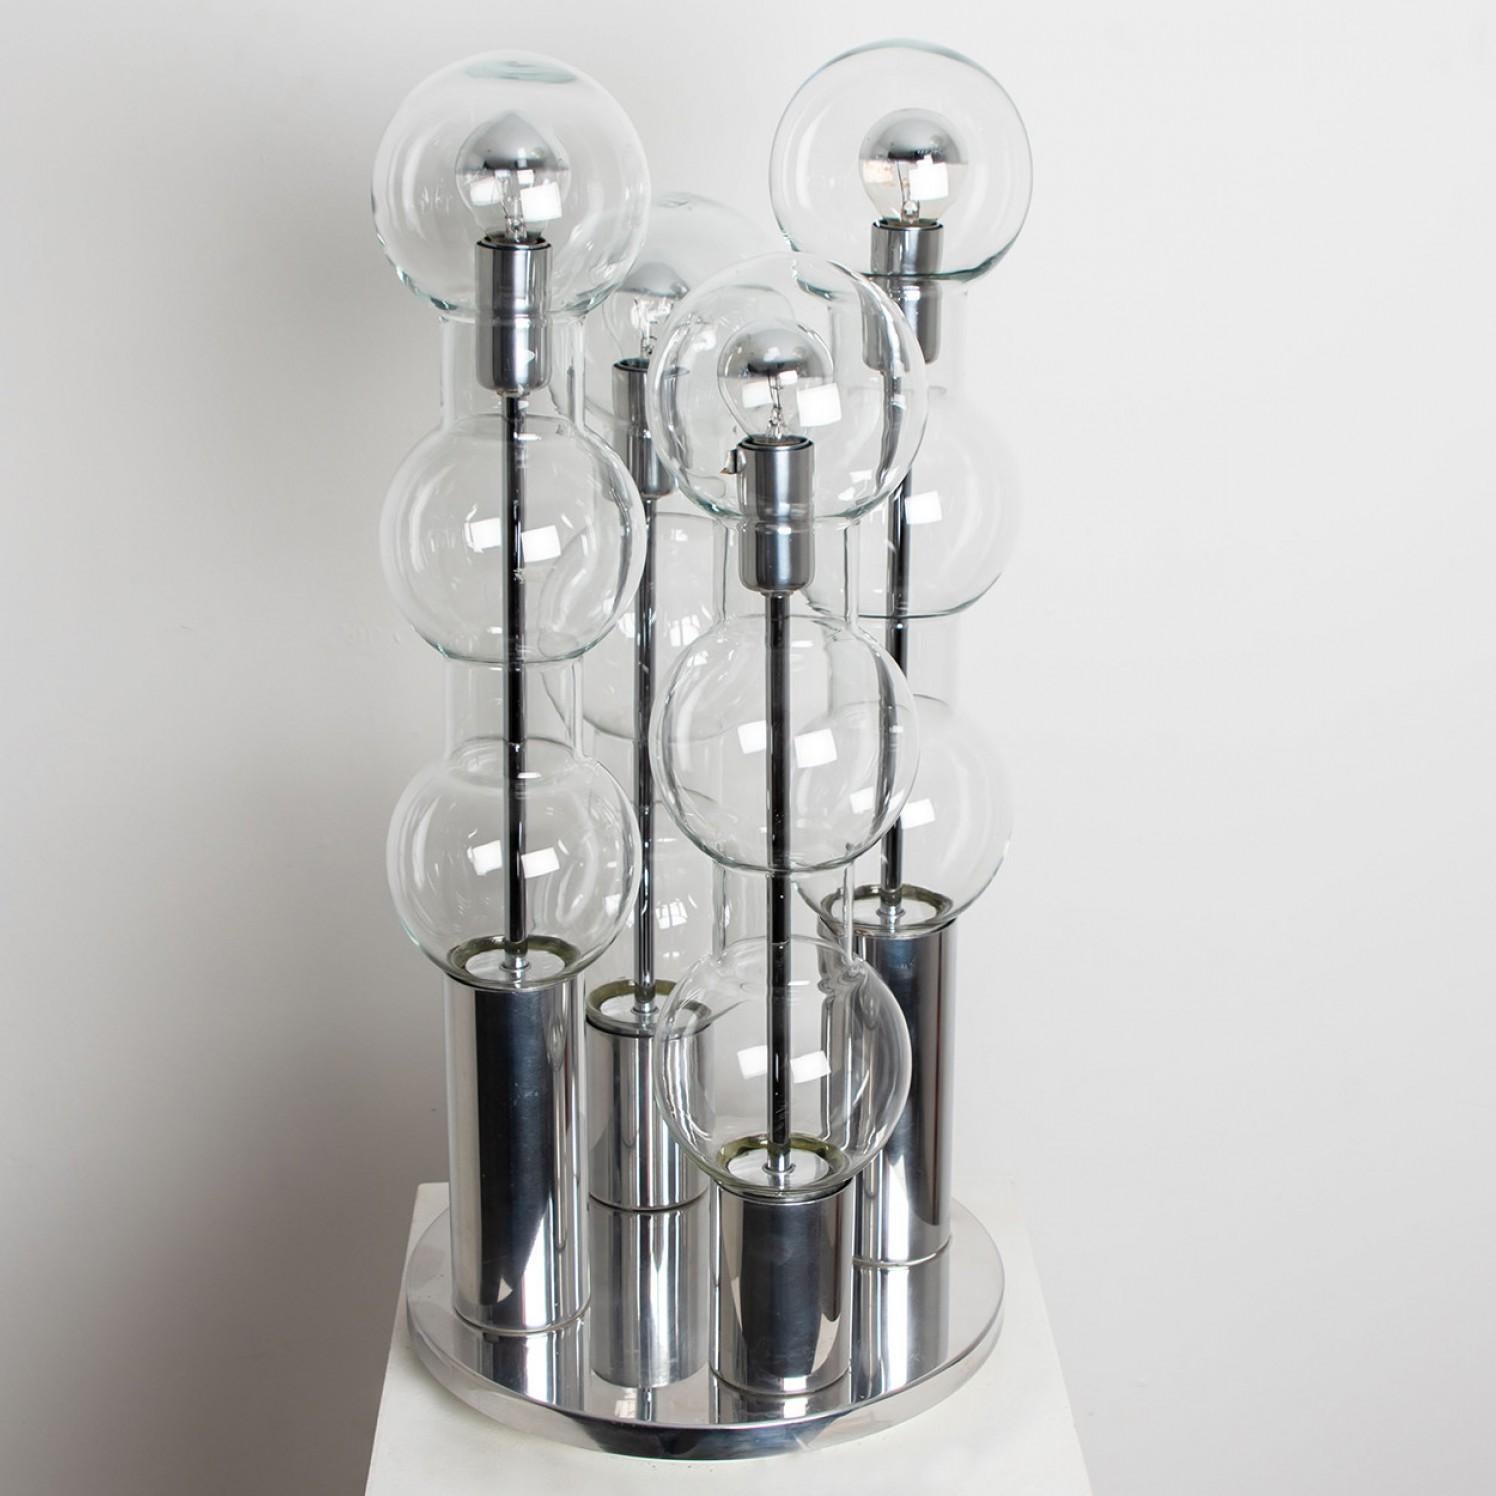 Vier Doria mundgeblasene Glasröhren auf einem Chromsockel. Hergestellt von Doria Leuchten Deutschland, ca. 1970. Dieses außergewöhnliche Artefakt des modernen Designs spiegelt das extreme Interesse am Modernismus in ganz Europa während dieser Zeit